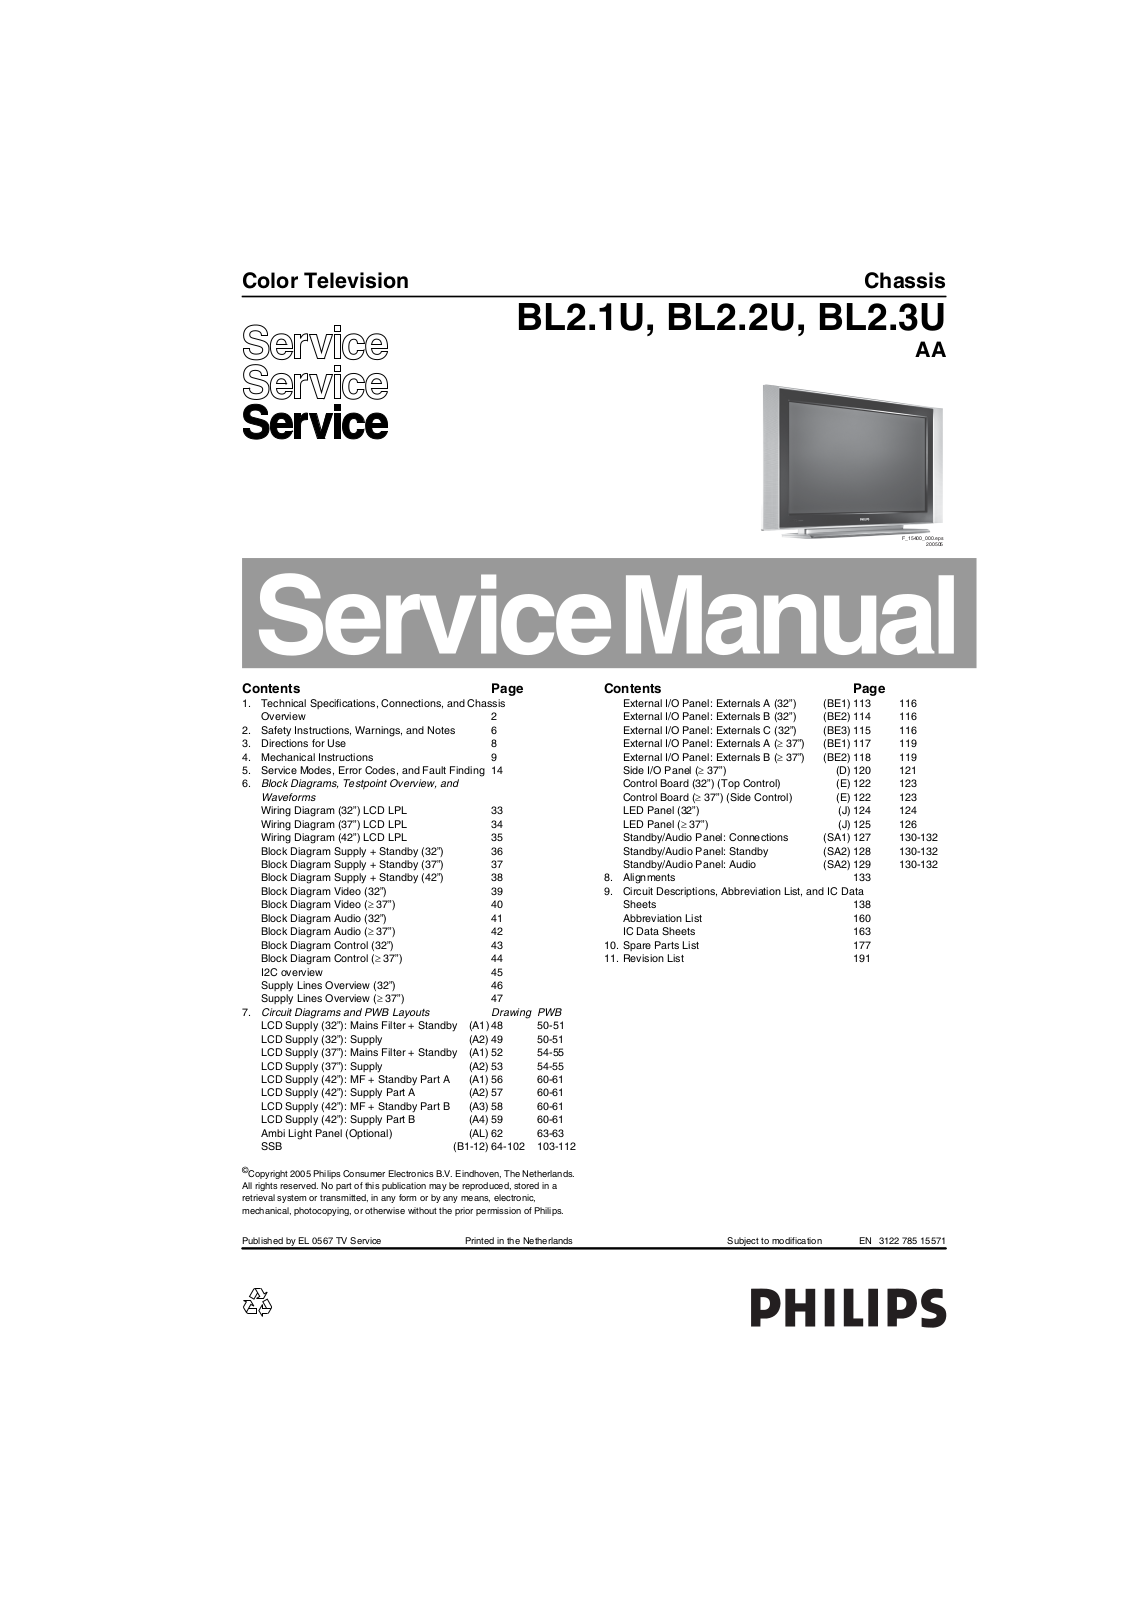 philips BL2.1U, BL2.2U, BL2.3U Service Manual